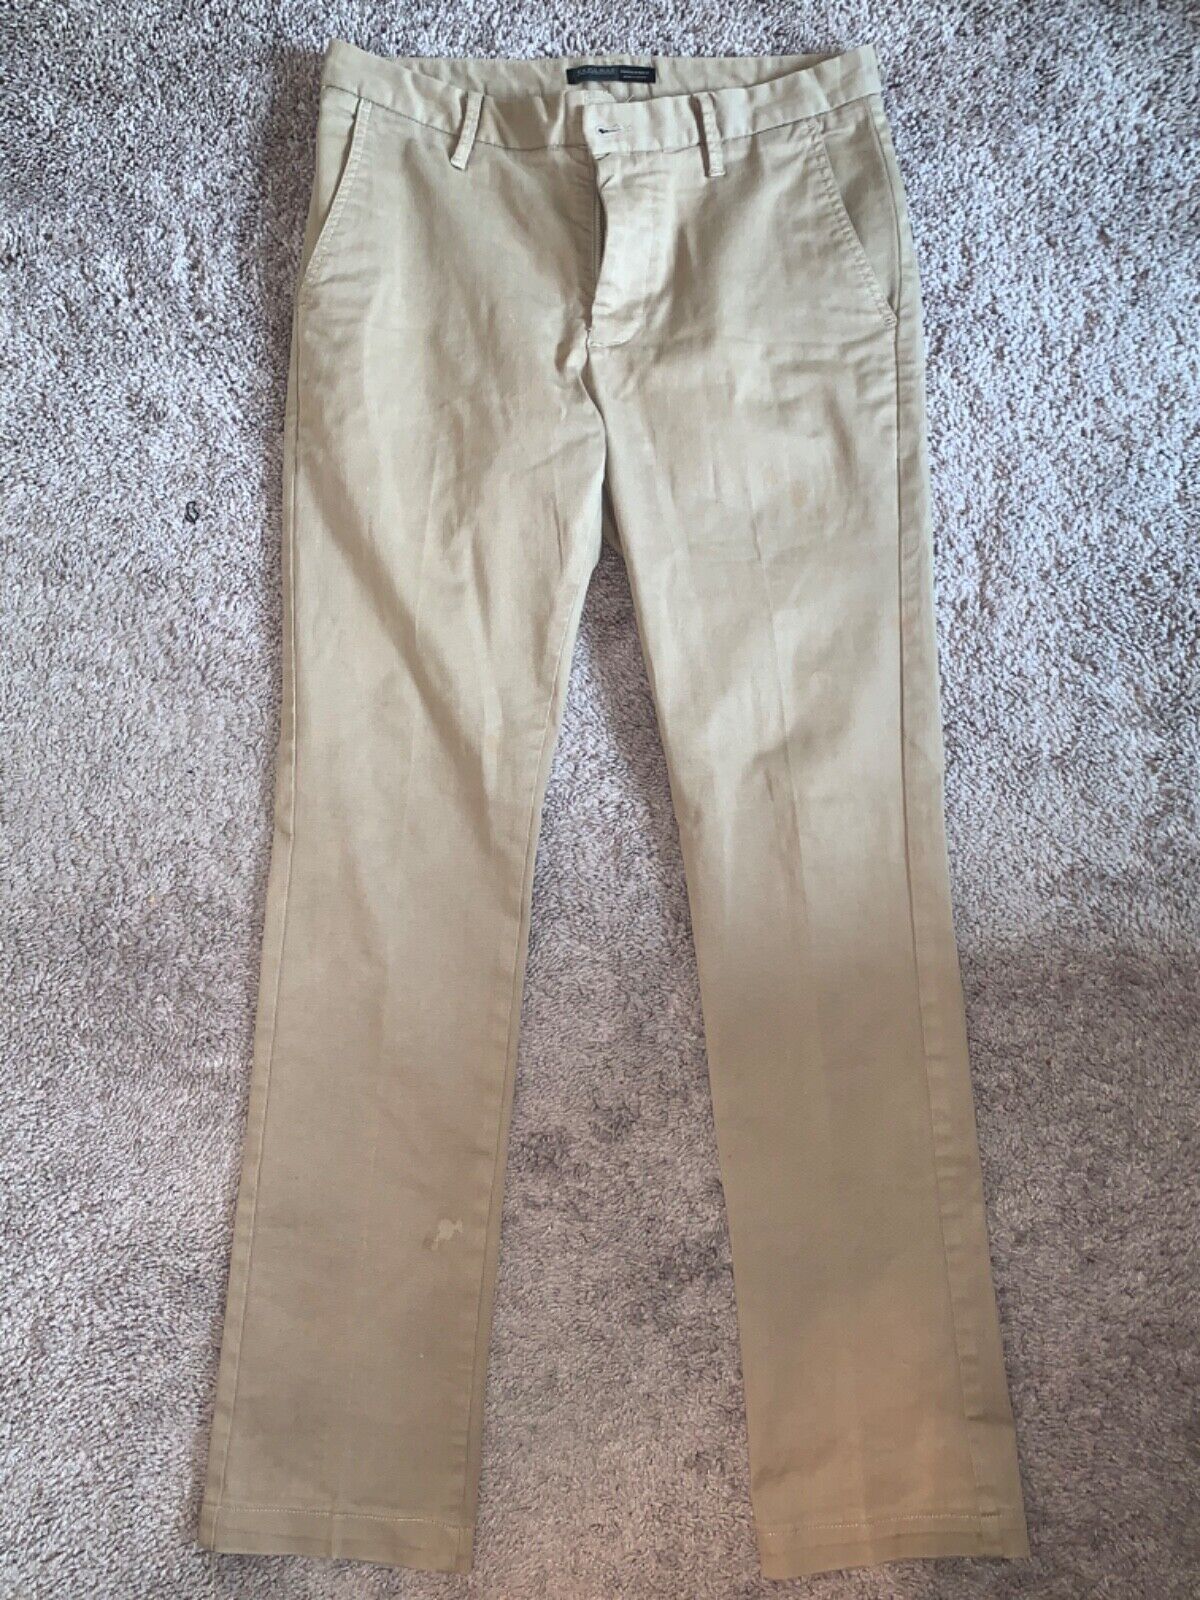 Zara Men Khaki Chino Dress Pants 38x32 - image 1